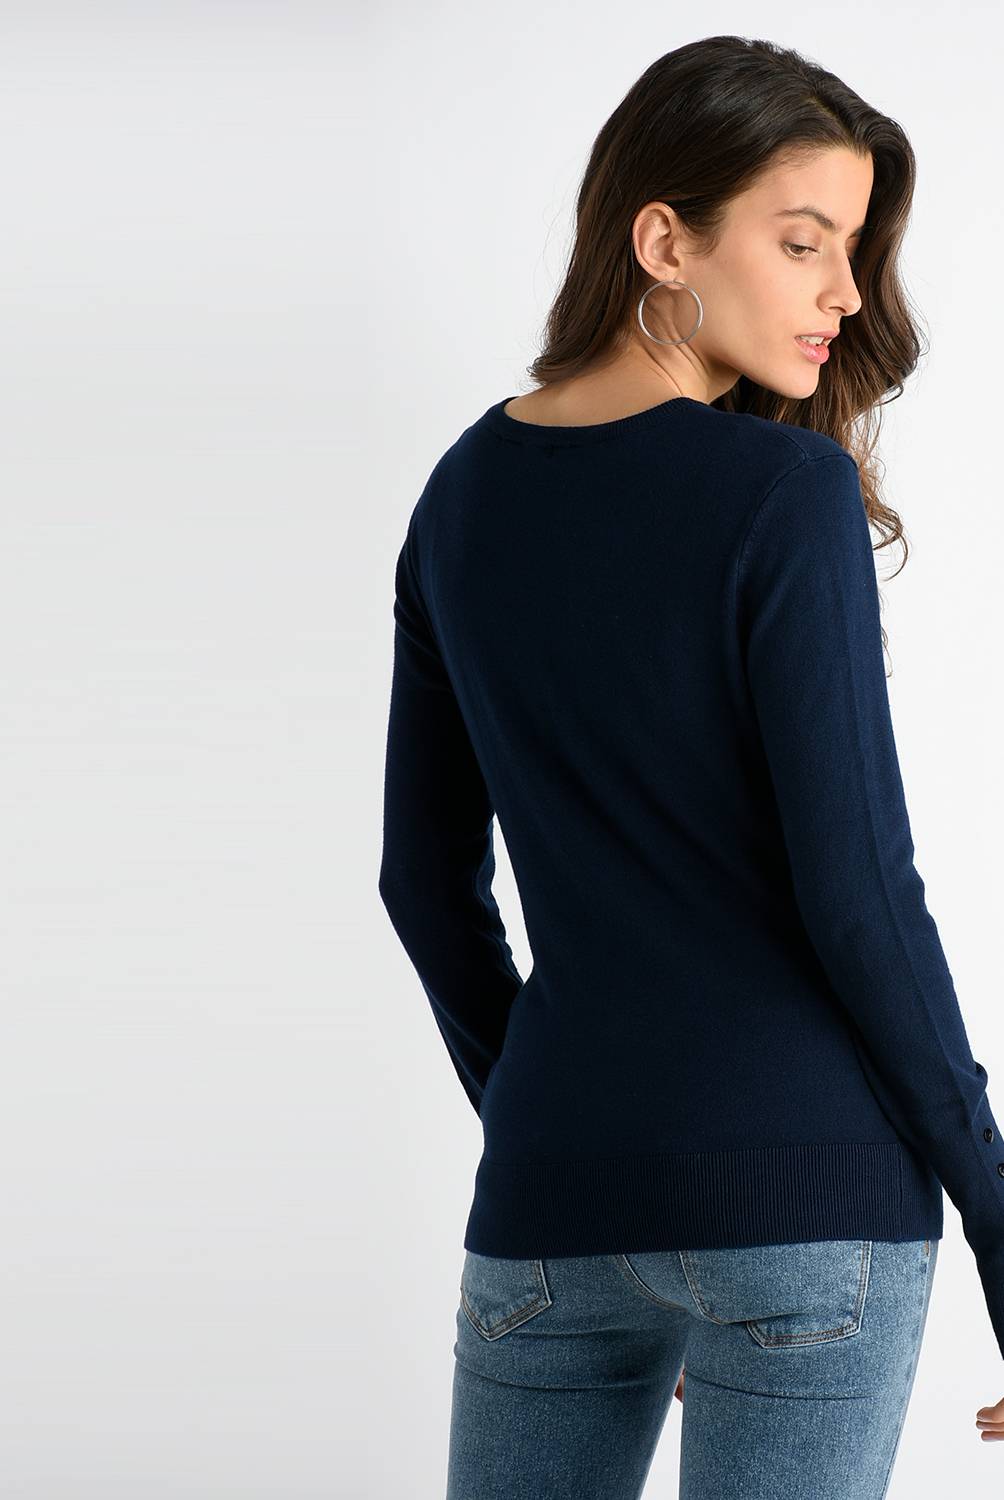 BASEMENT - Sweater Mujer